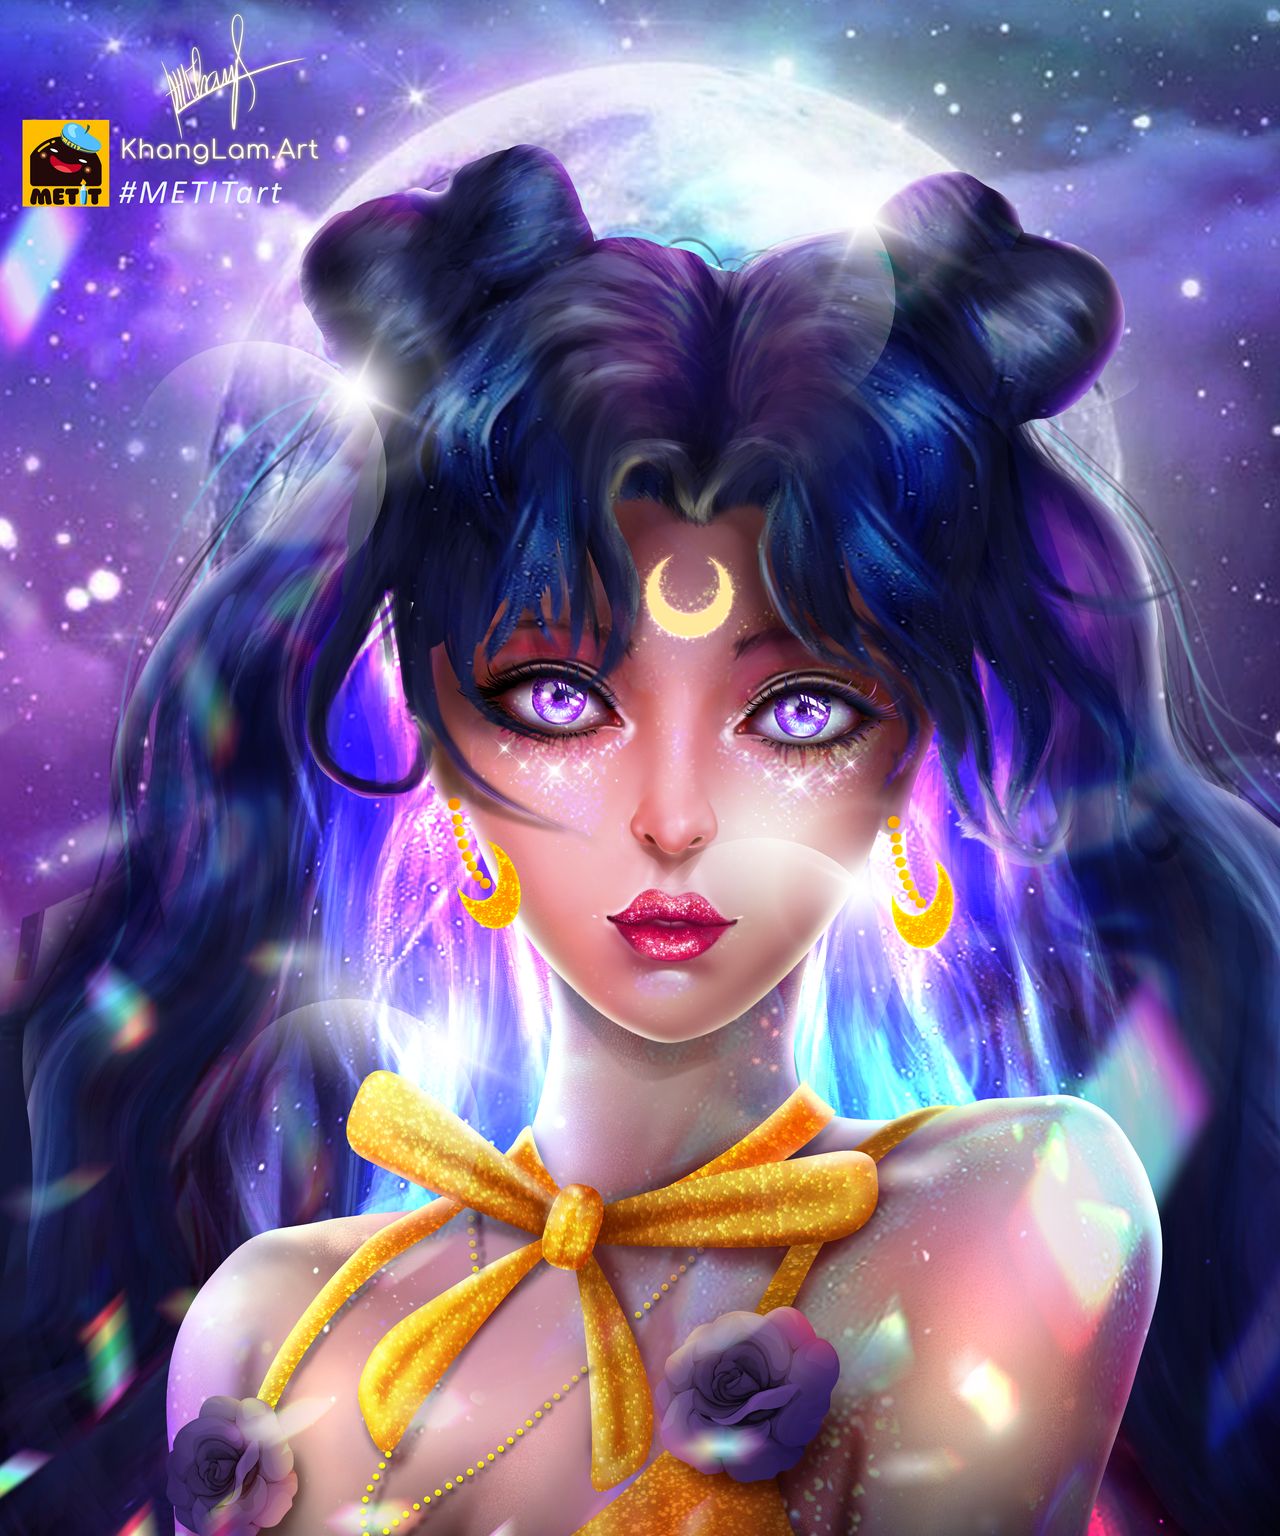 Фото Usagi Tsukino / Усаги Цукино / Сейлор Мун / Seilor Moon из аниме Bishoujo Senshi Sailor Moon / Красавица-воин Сейлор Мун, by MetitArt